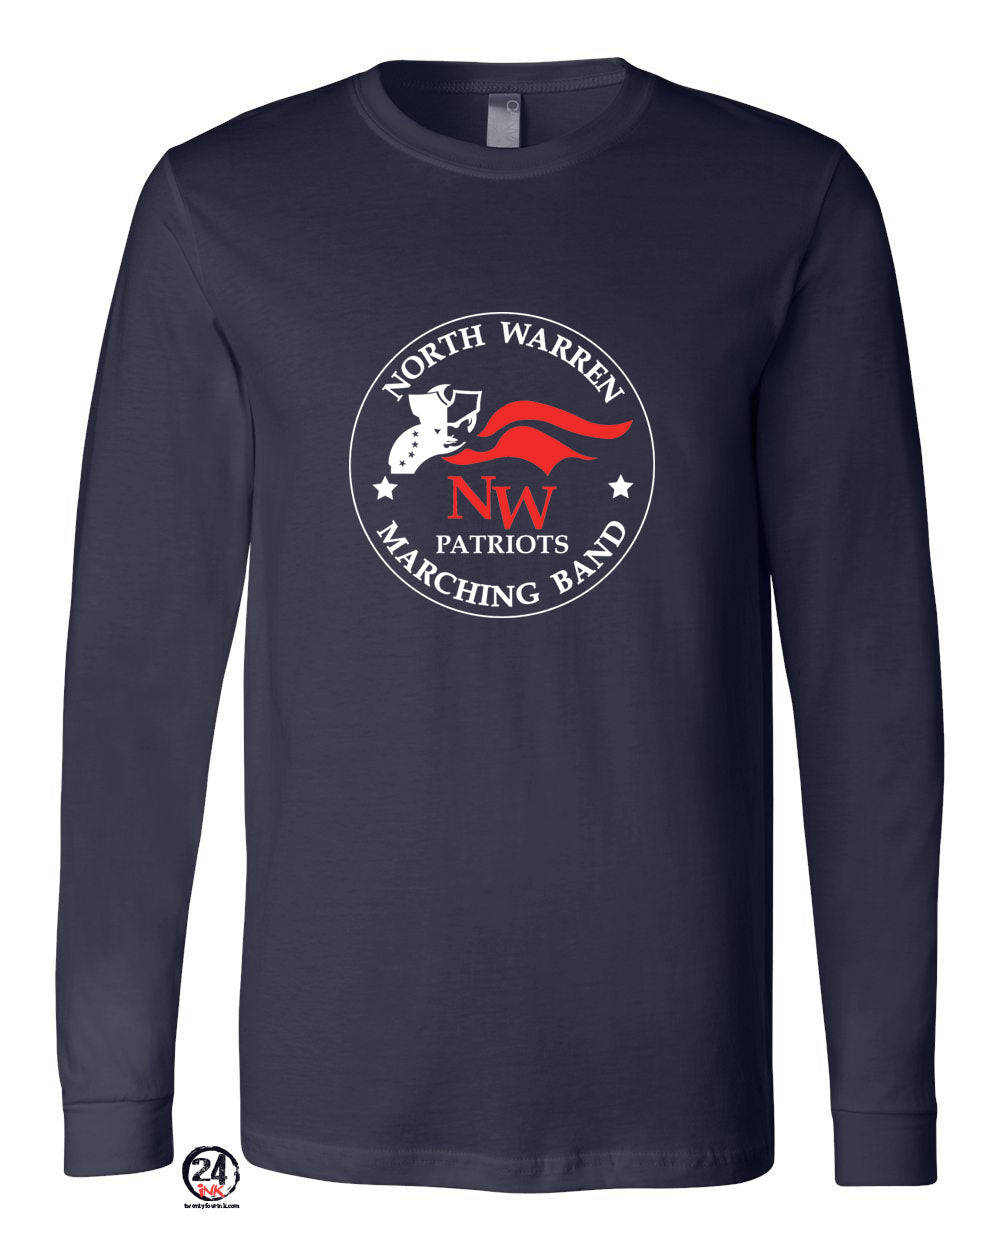 North Warren Band Design 6 Long Sleeve Shirt